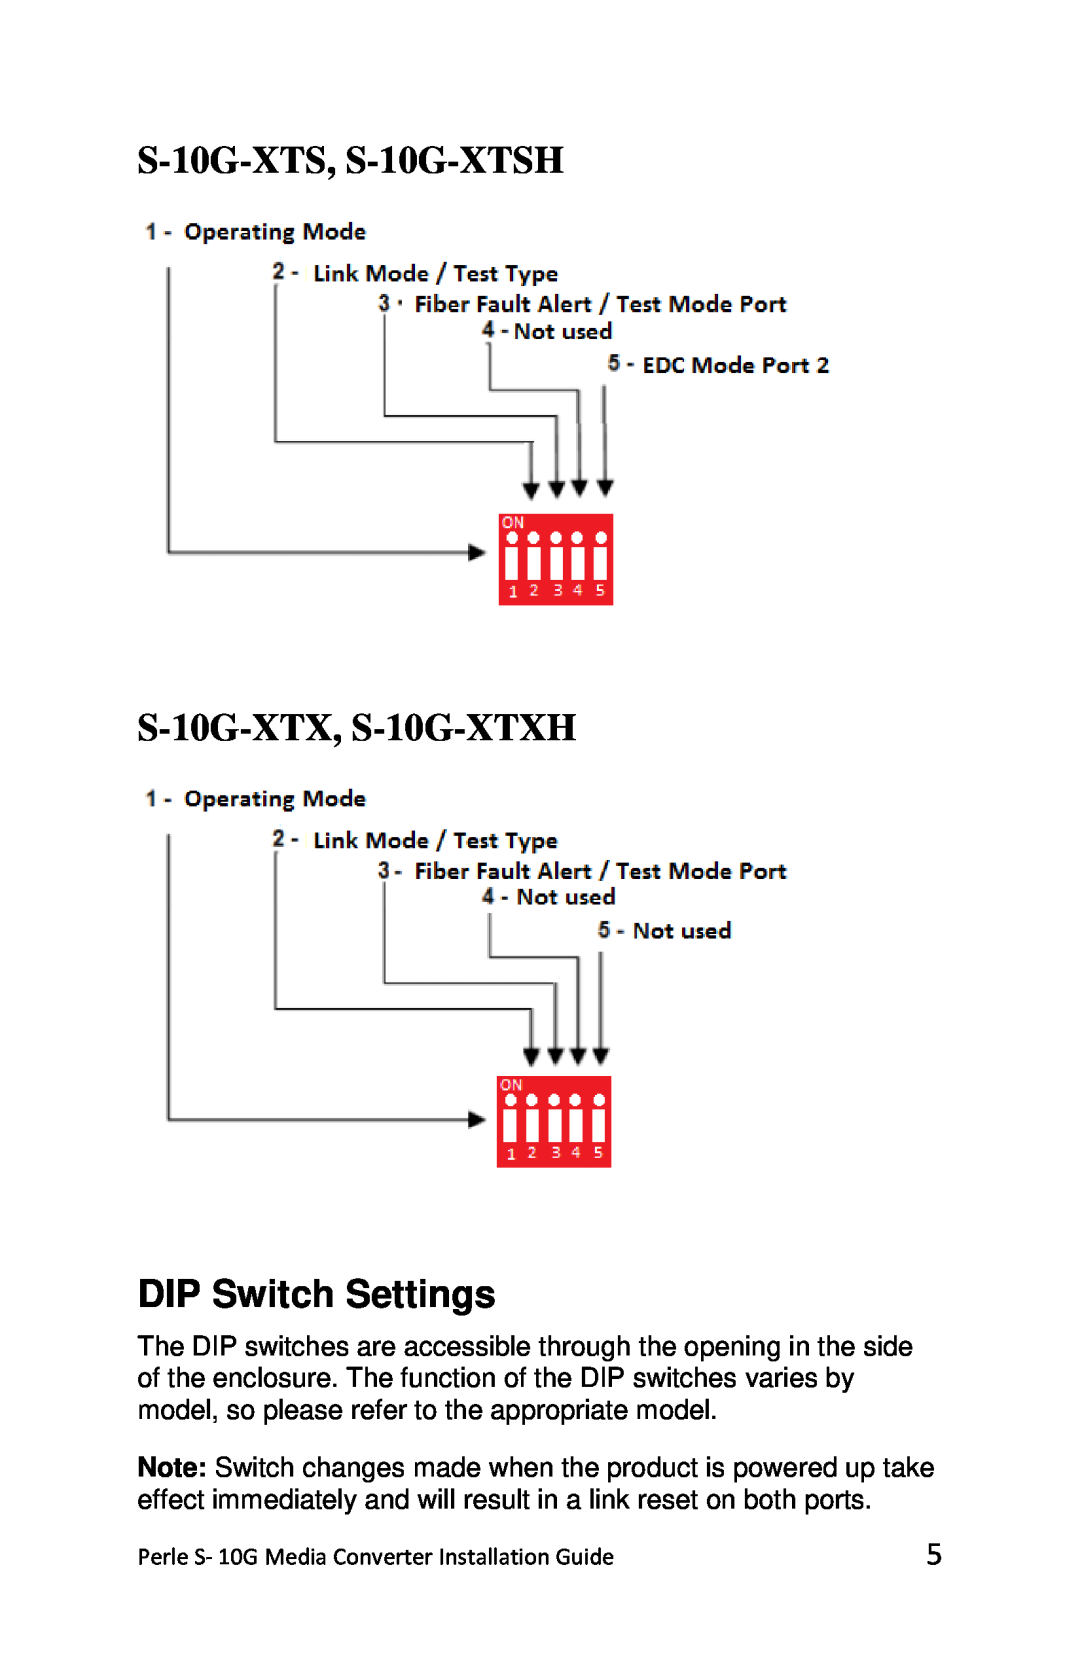 Perle Systems S-10G-STS manual S-10G-XTS, S-10G-XTSH S-10G-XTX, S-10G-XTXH, DIP Switch Settings 